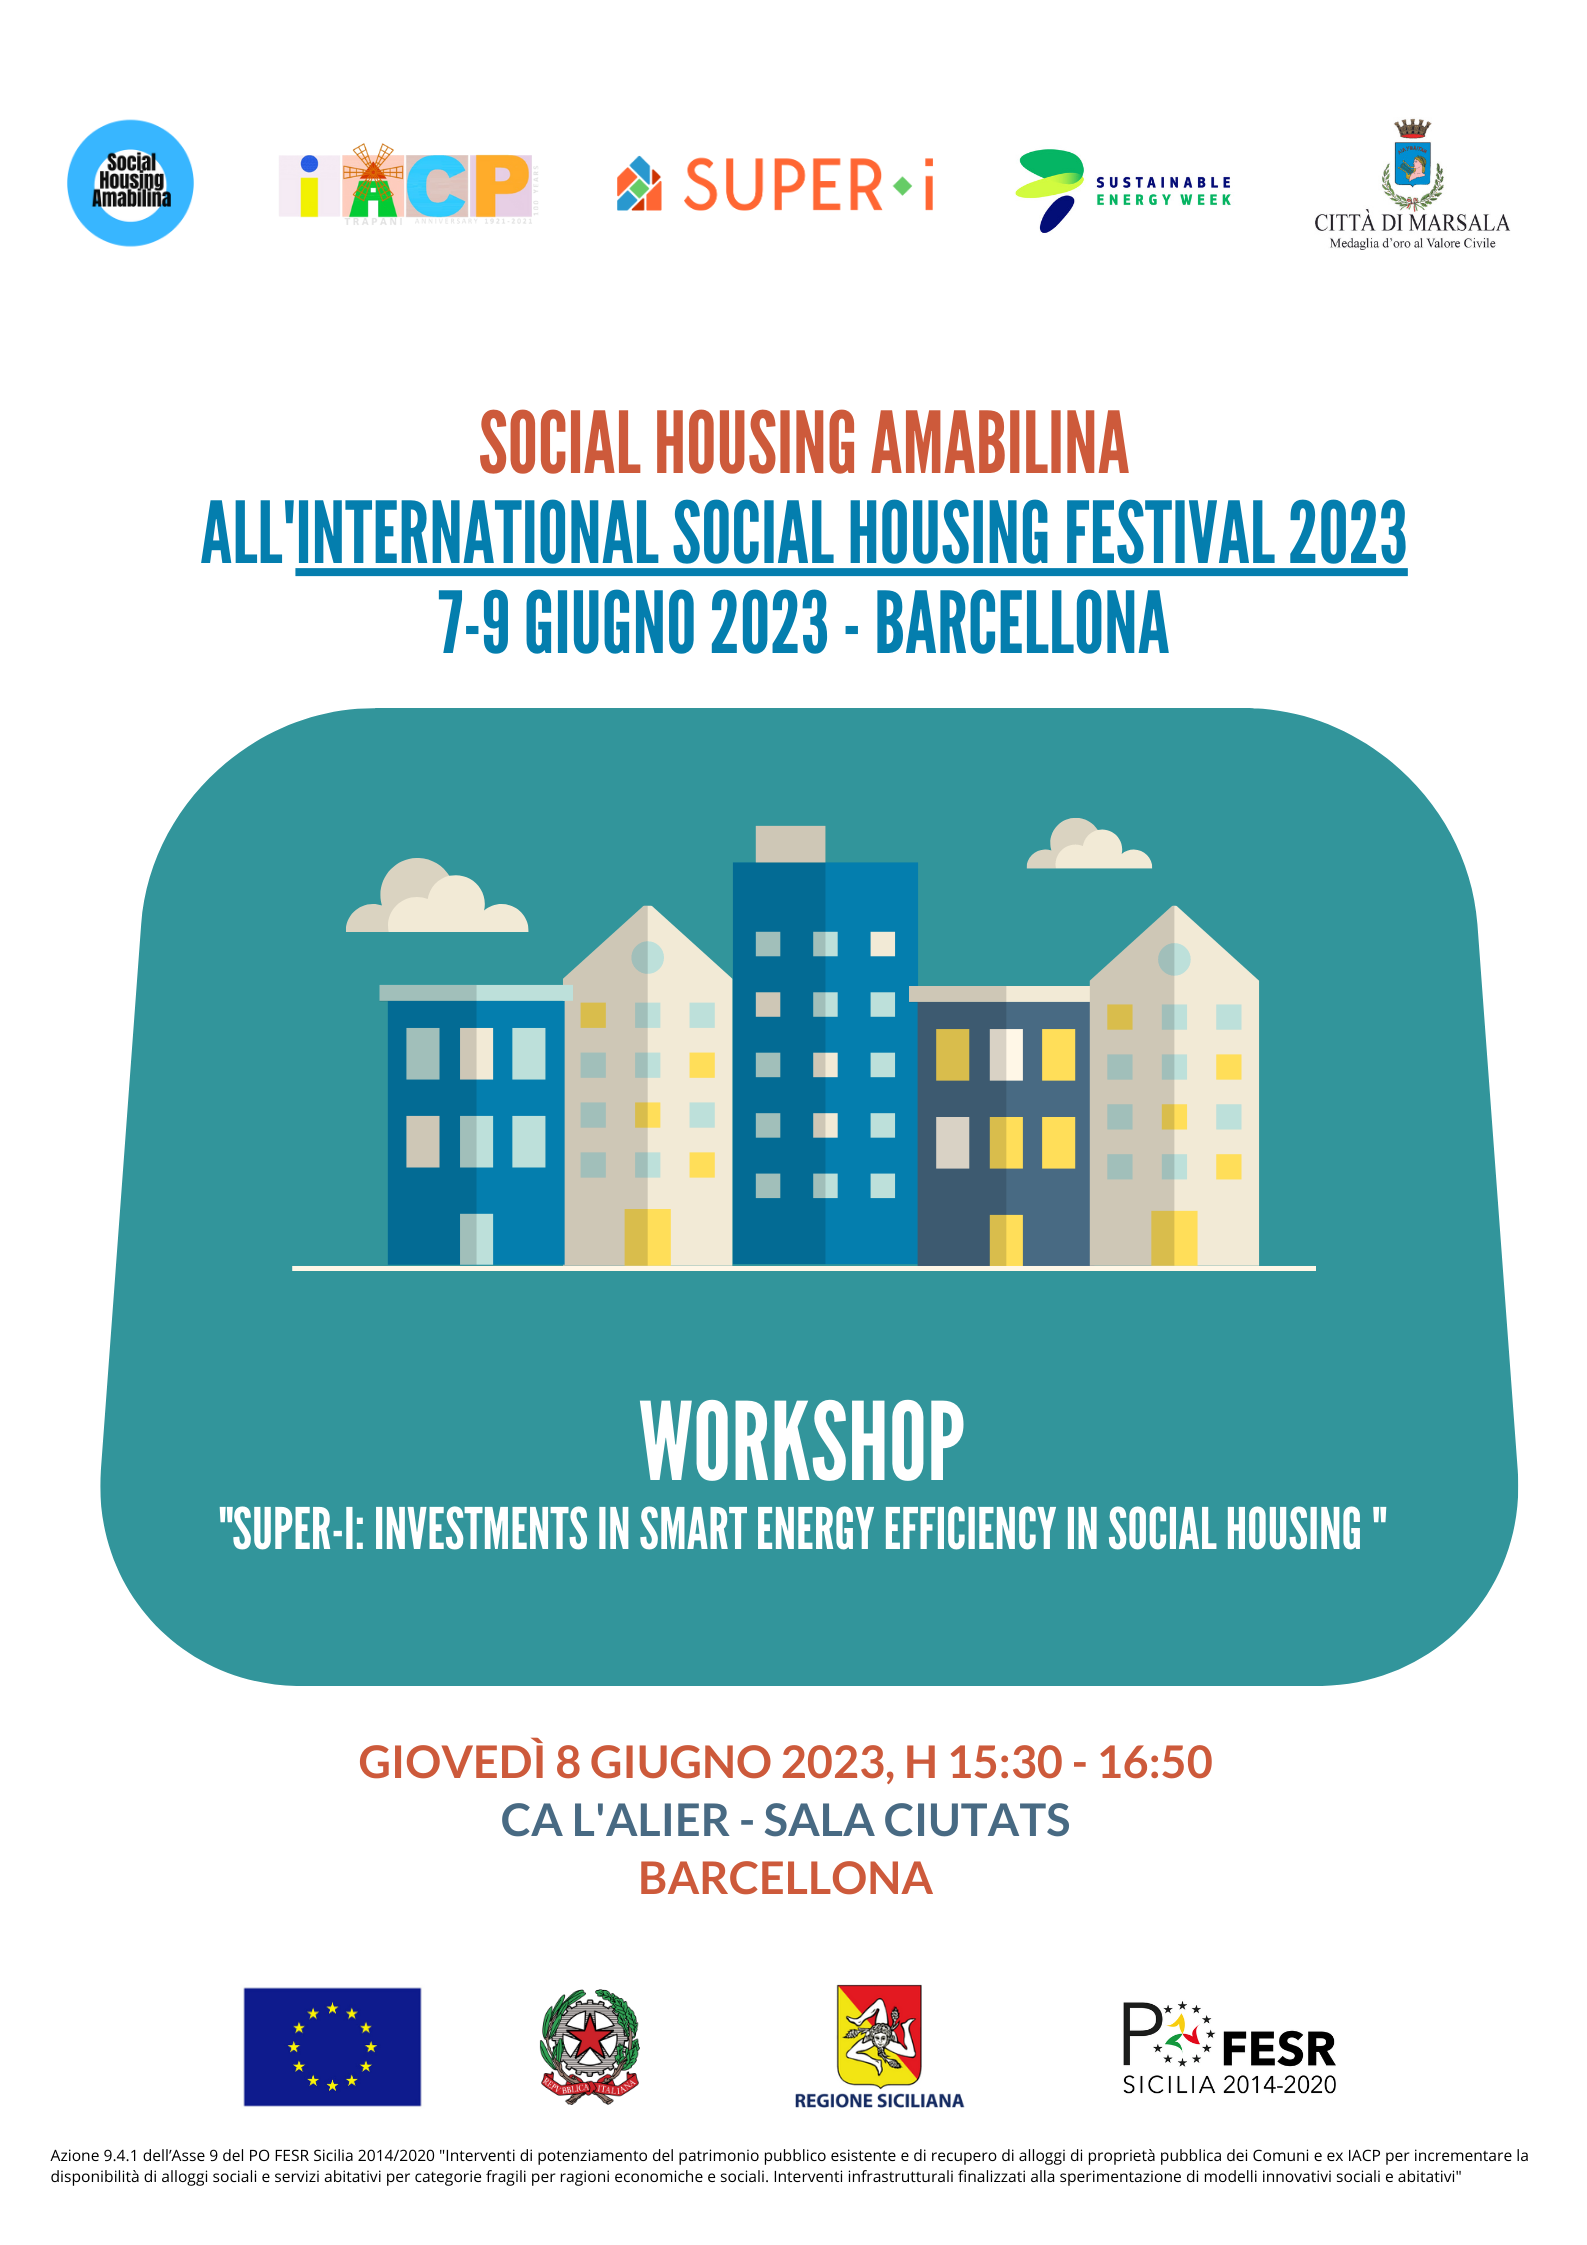 IACP di Trapani: l’esempio del progetto “Social Housing Amabilina” al Festival Internazionale dell’Edilizia Sociale